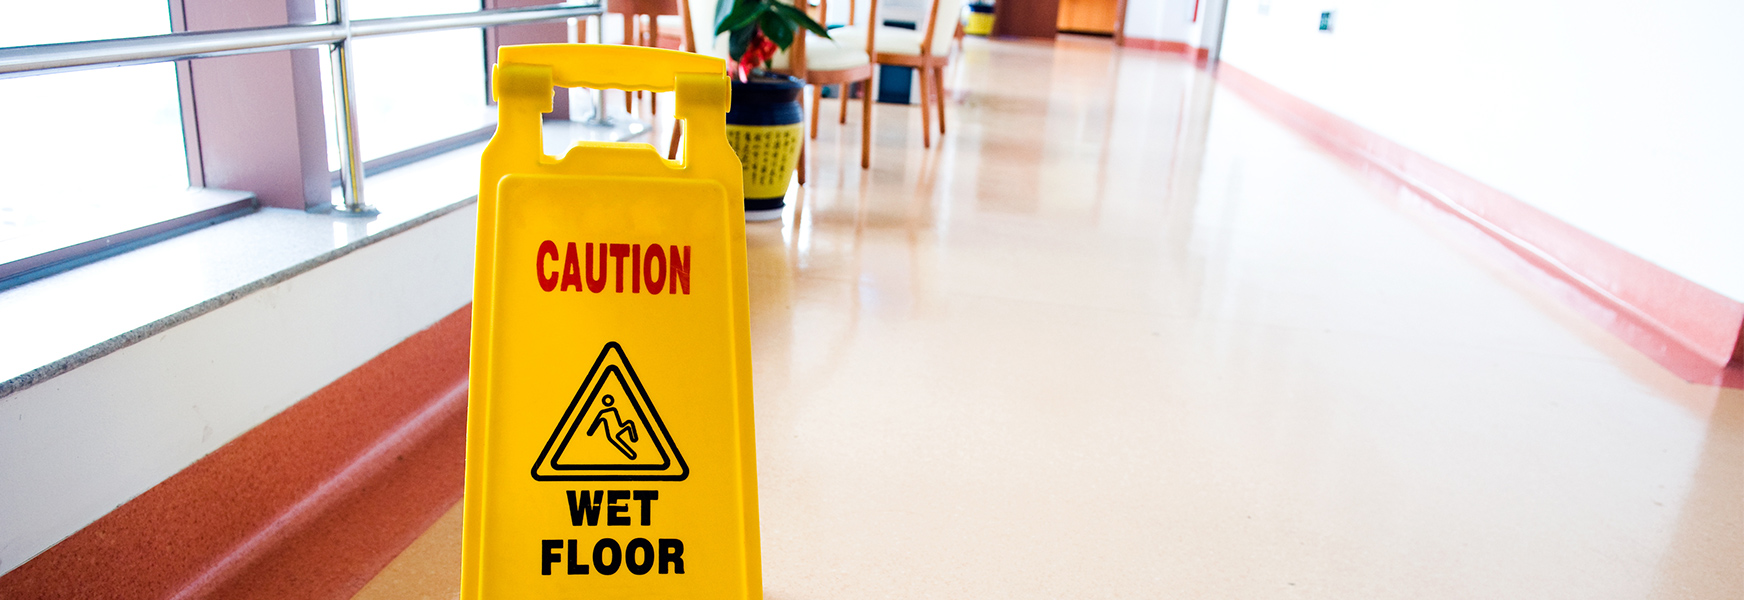 Wet floor sign standing in business hallway